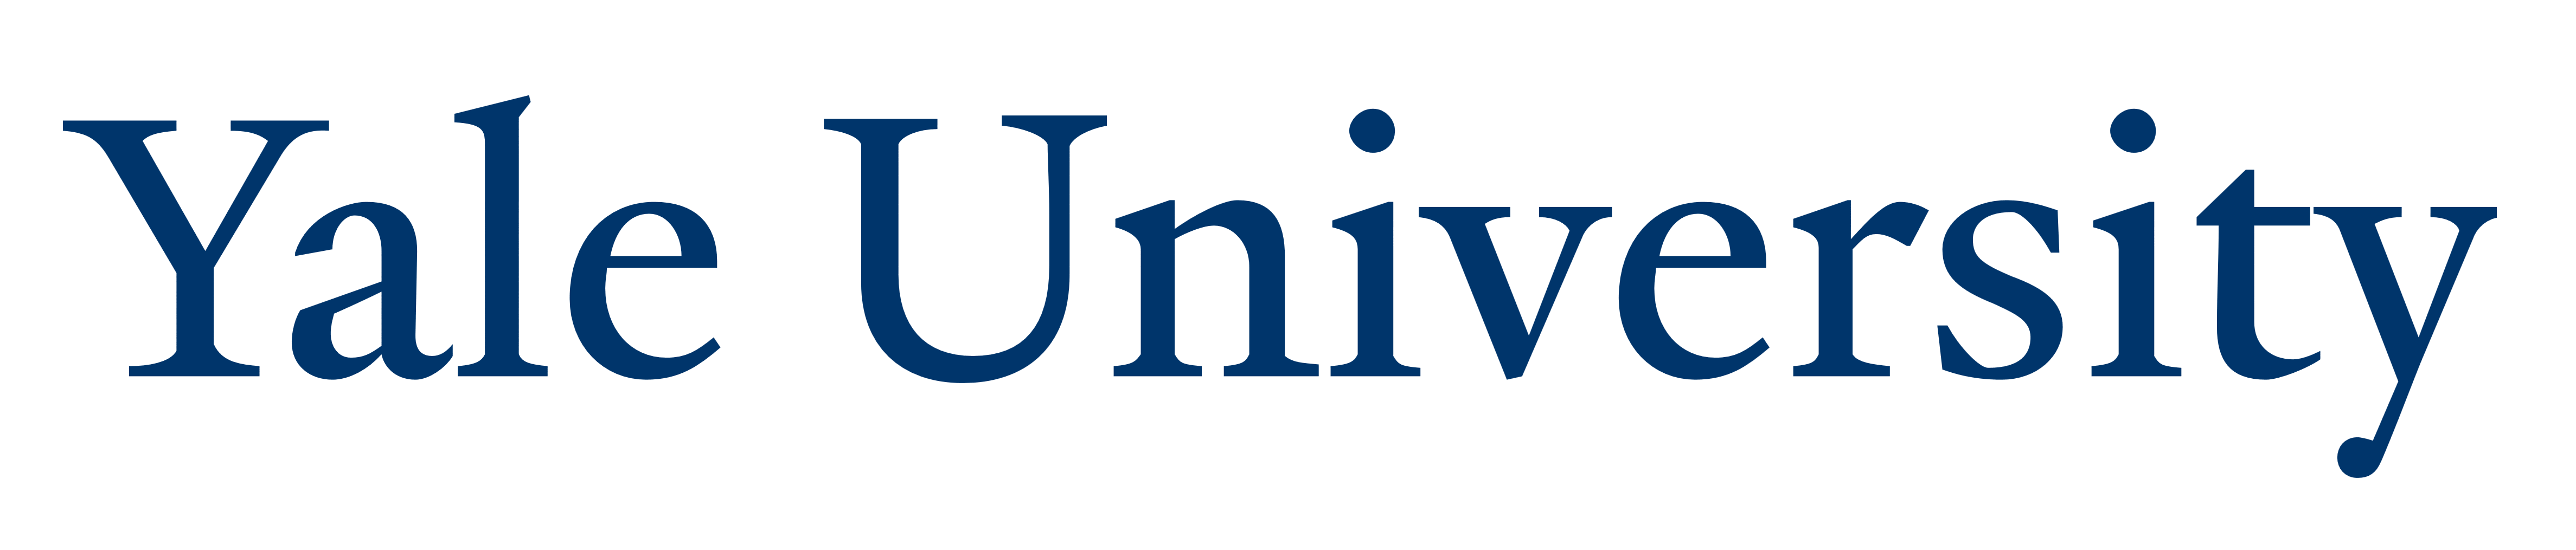 Yale University logo, logotype